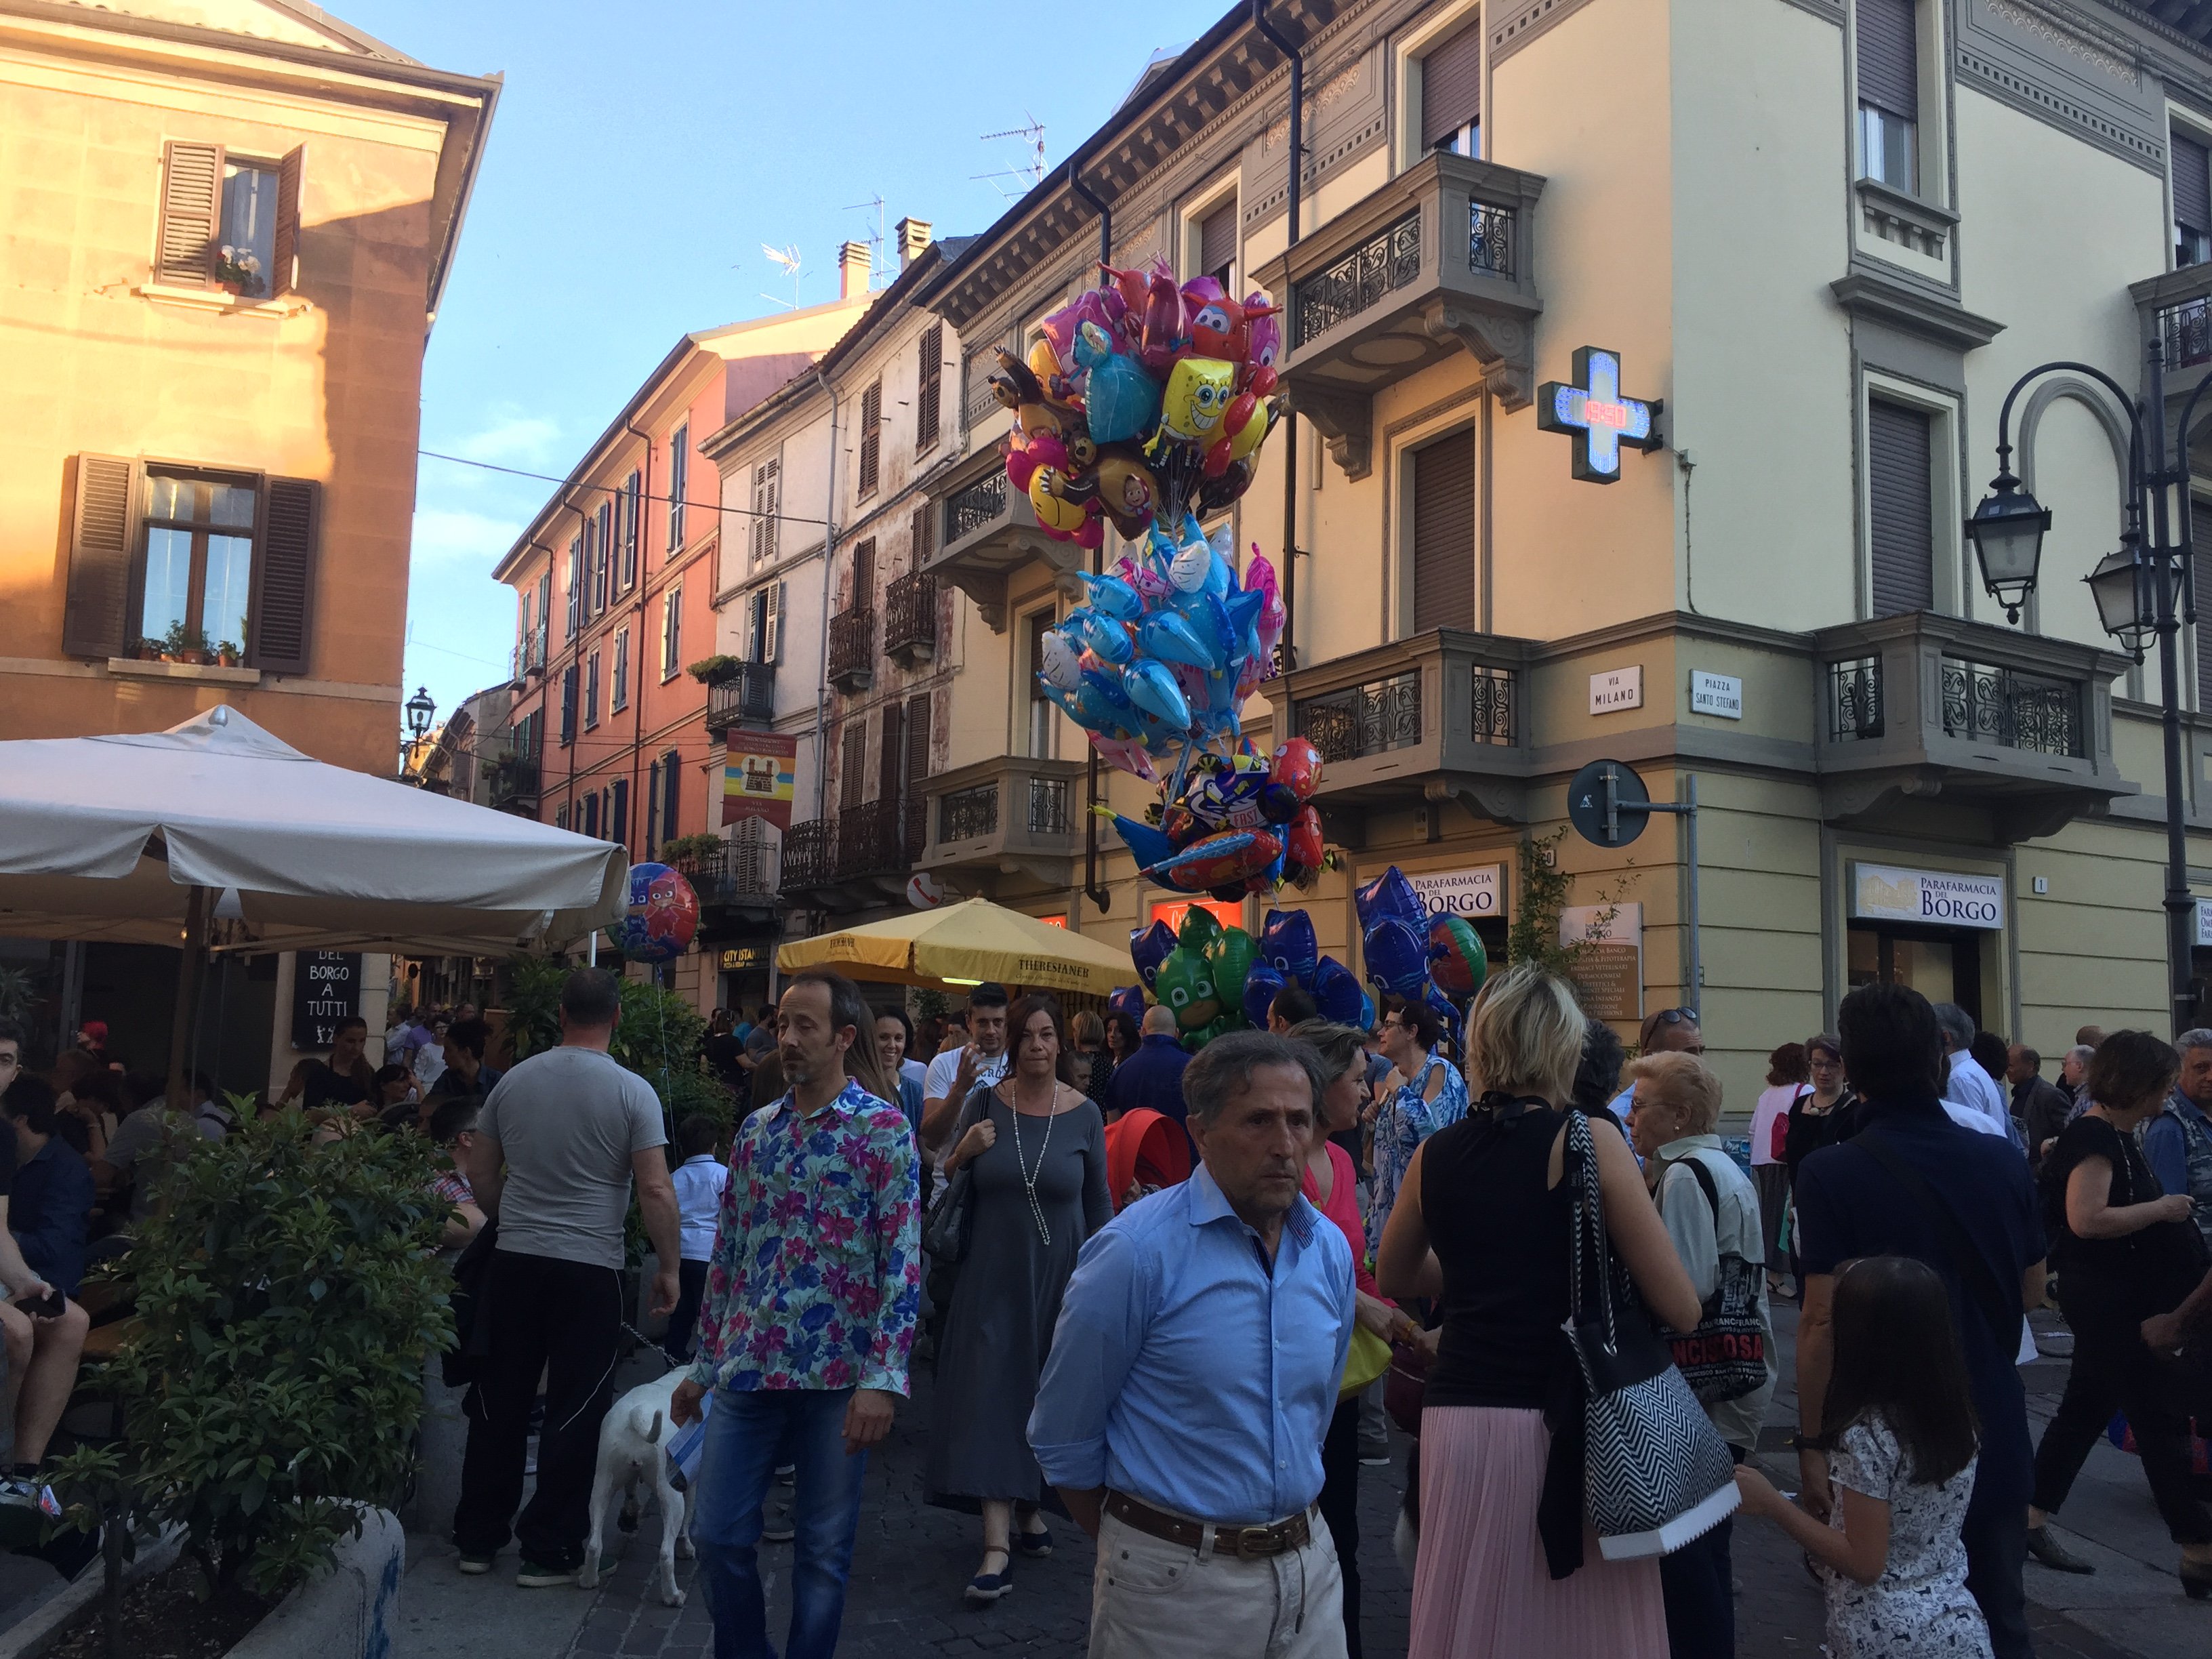 Festa di Borgo Rovereto: tutti gli eventi in ogni via e piazza